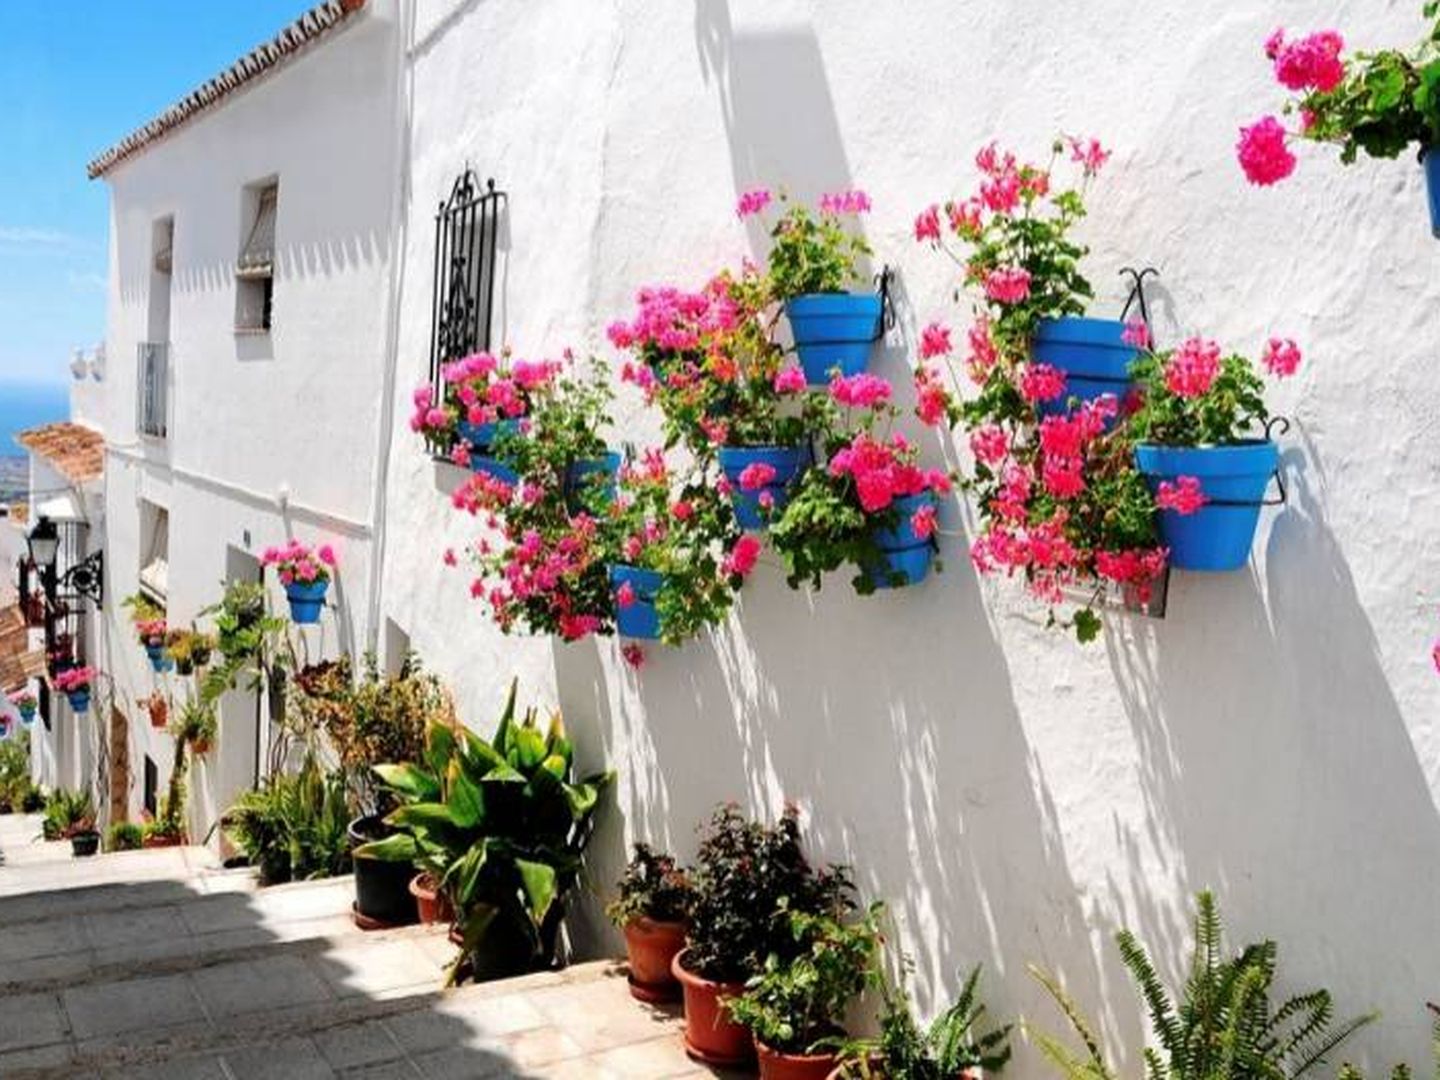 Las fachadas adornadas con geranios son marca de la casa. (Foto: Turismo Mijas)